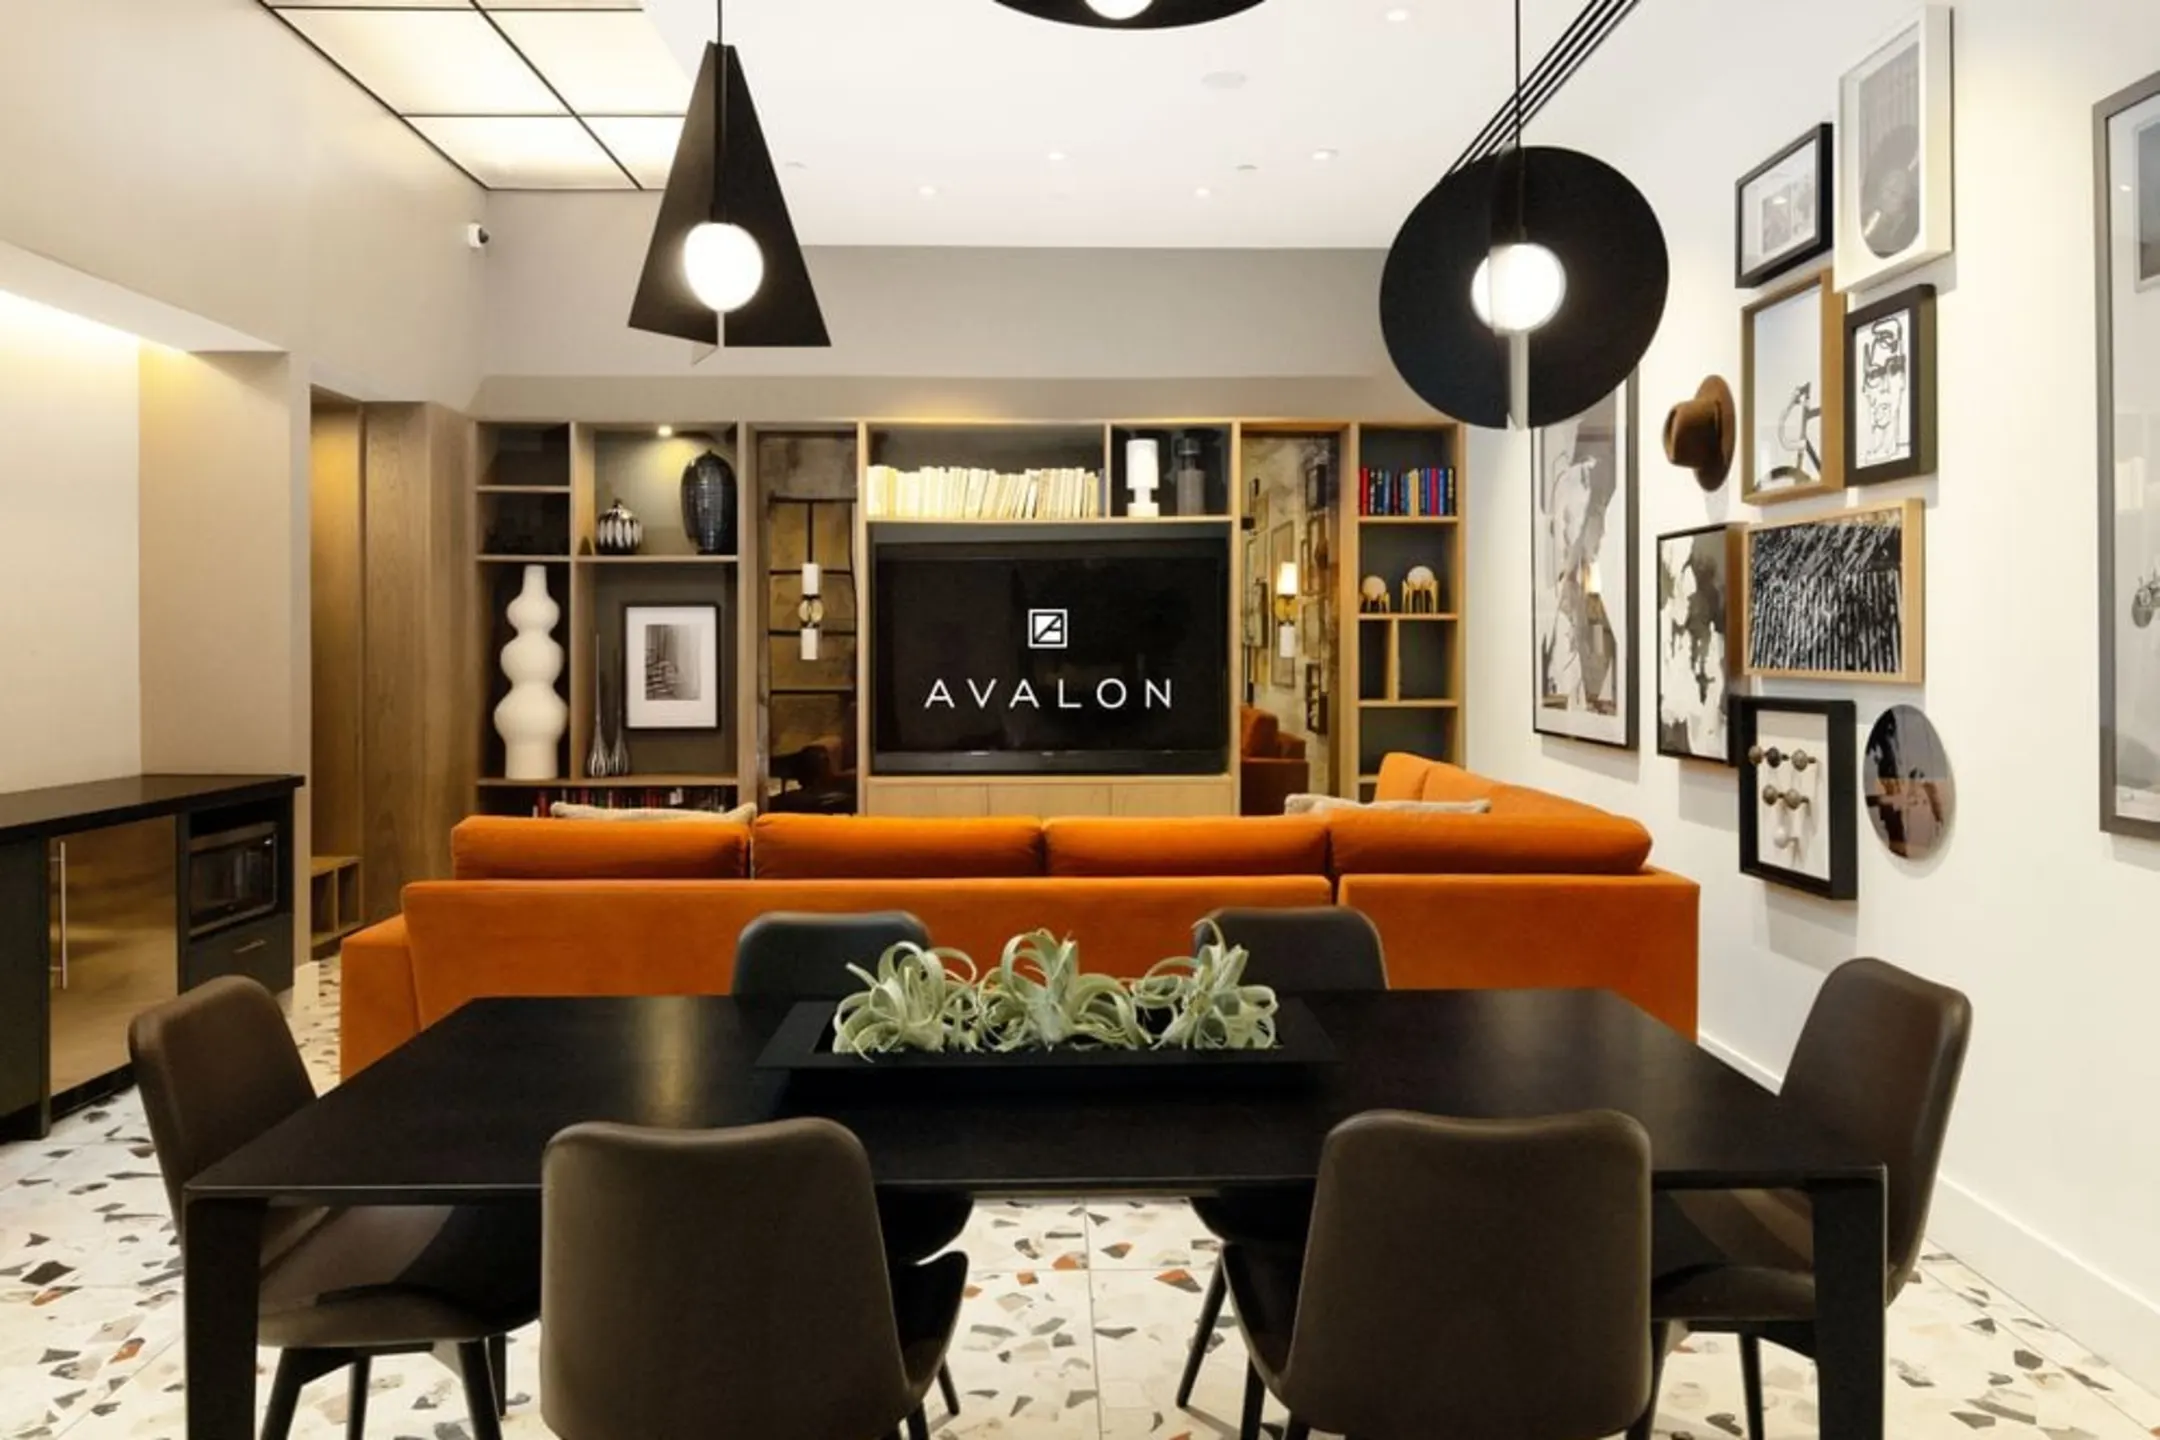 Dining Room - Avalon Bowery Place - New York, NY